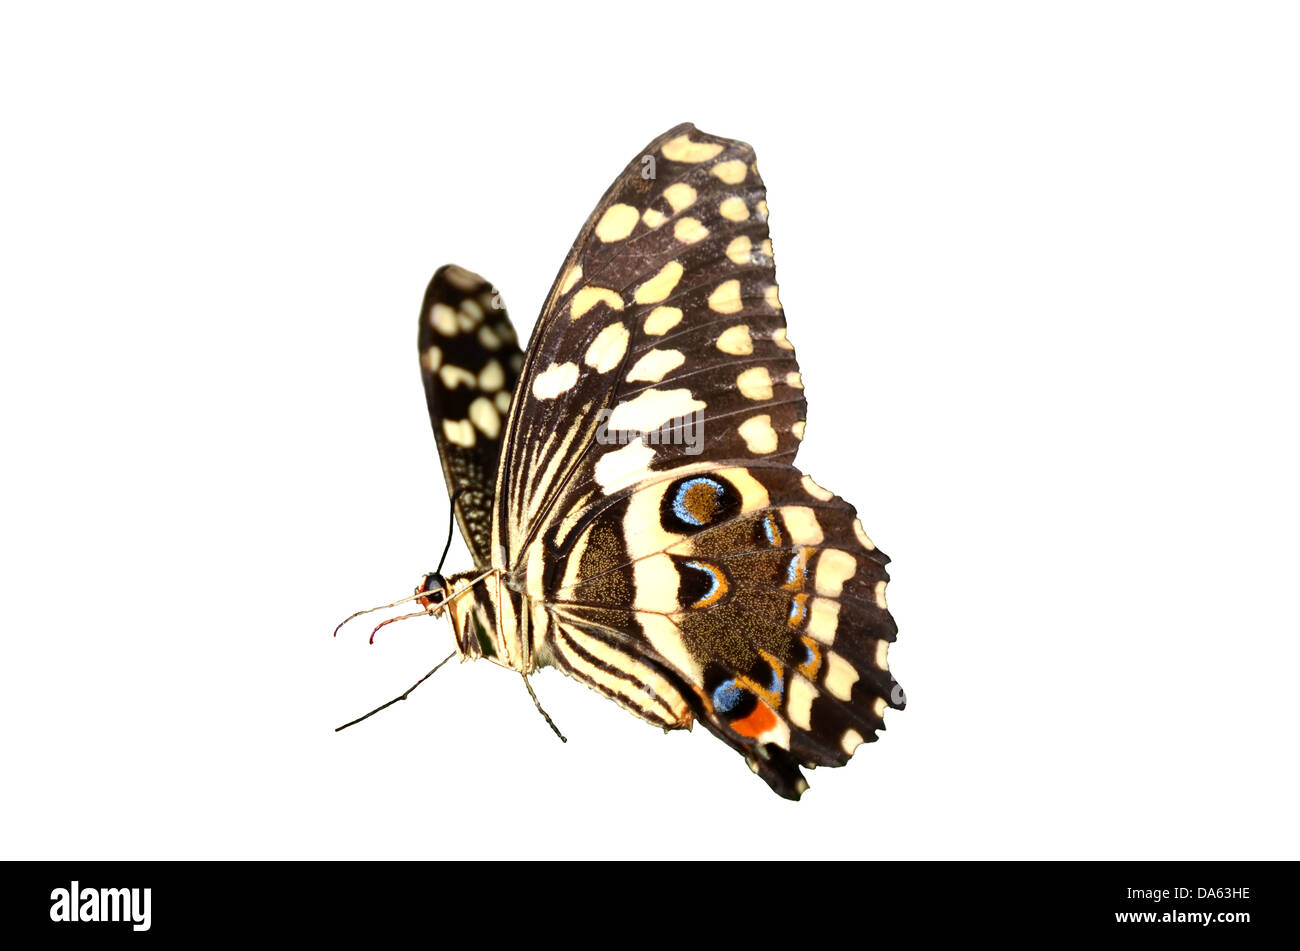 Le Citrus Swallowtail butterfly, papilio, Caravaggio collier style necklace, à partir de l'Afrique sub-saharienne. Isolé sur un fond blanc. Banque D'Images